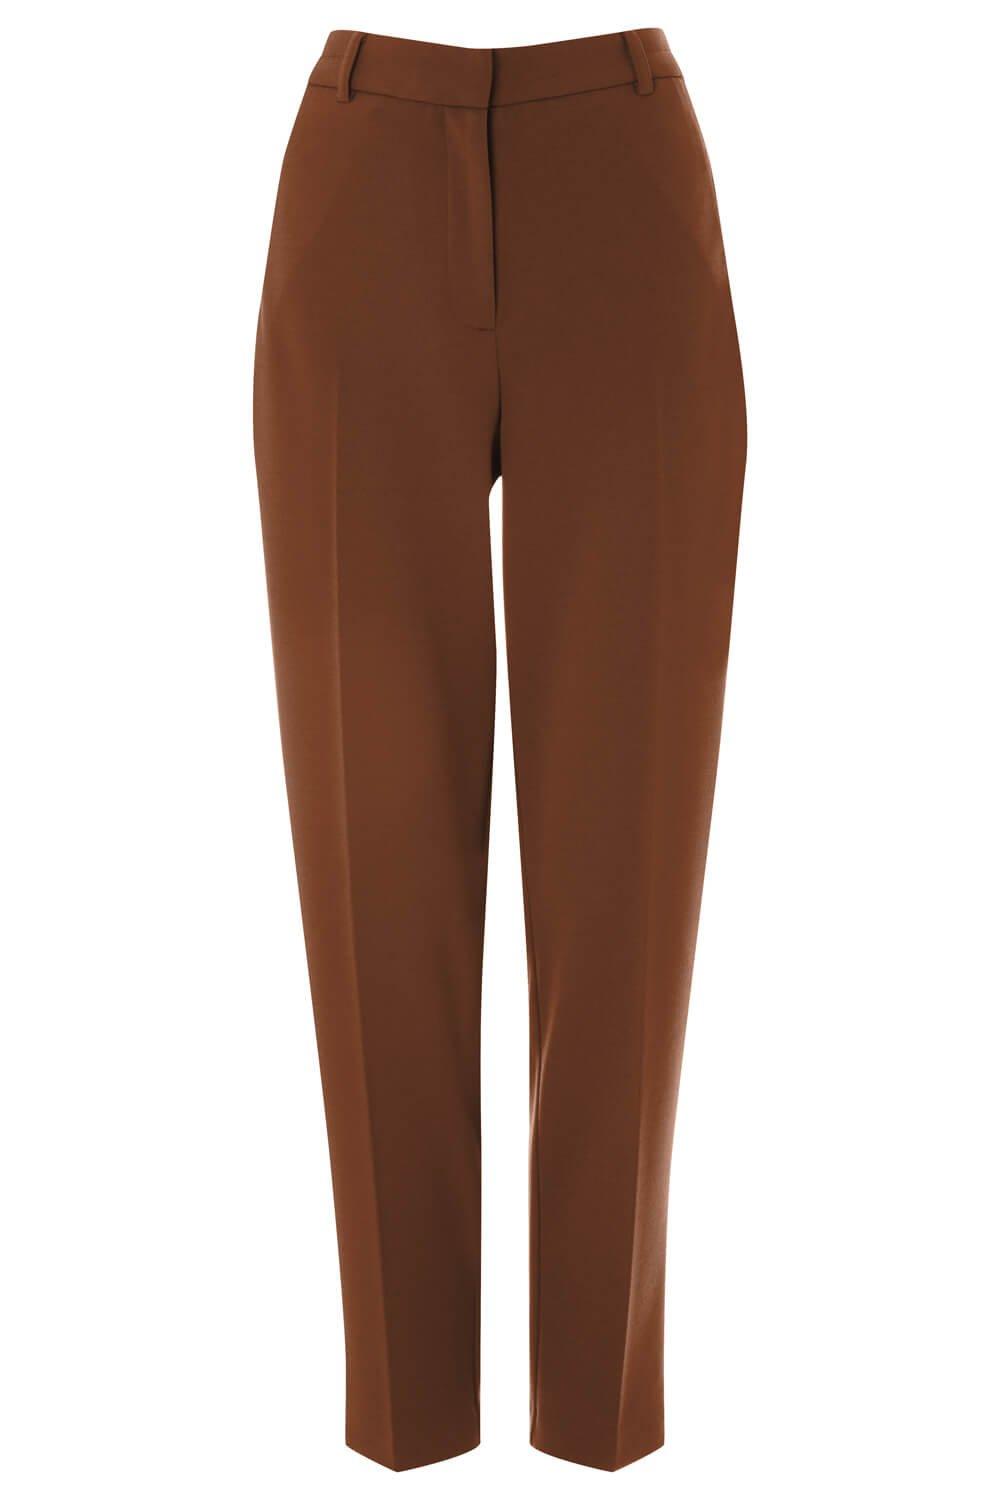 Короткие прямые эластичные брюки Roman, коричневый брюки прямые хлоя